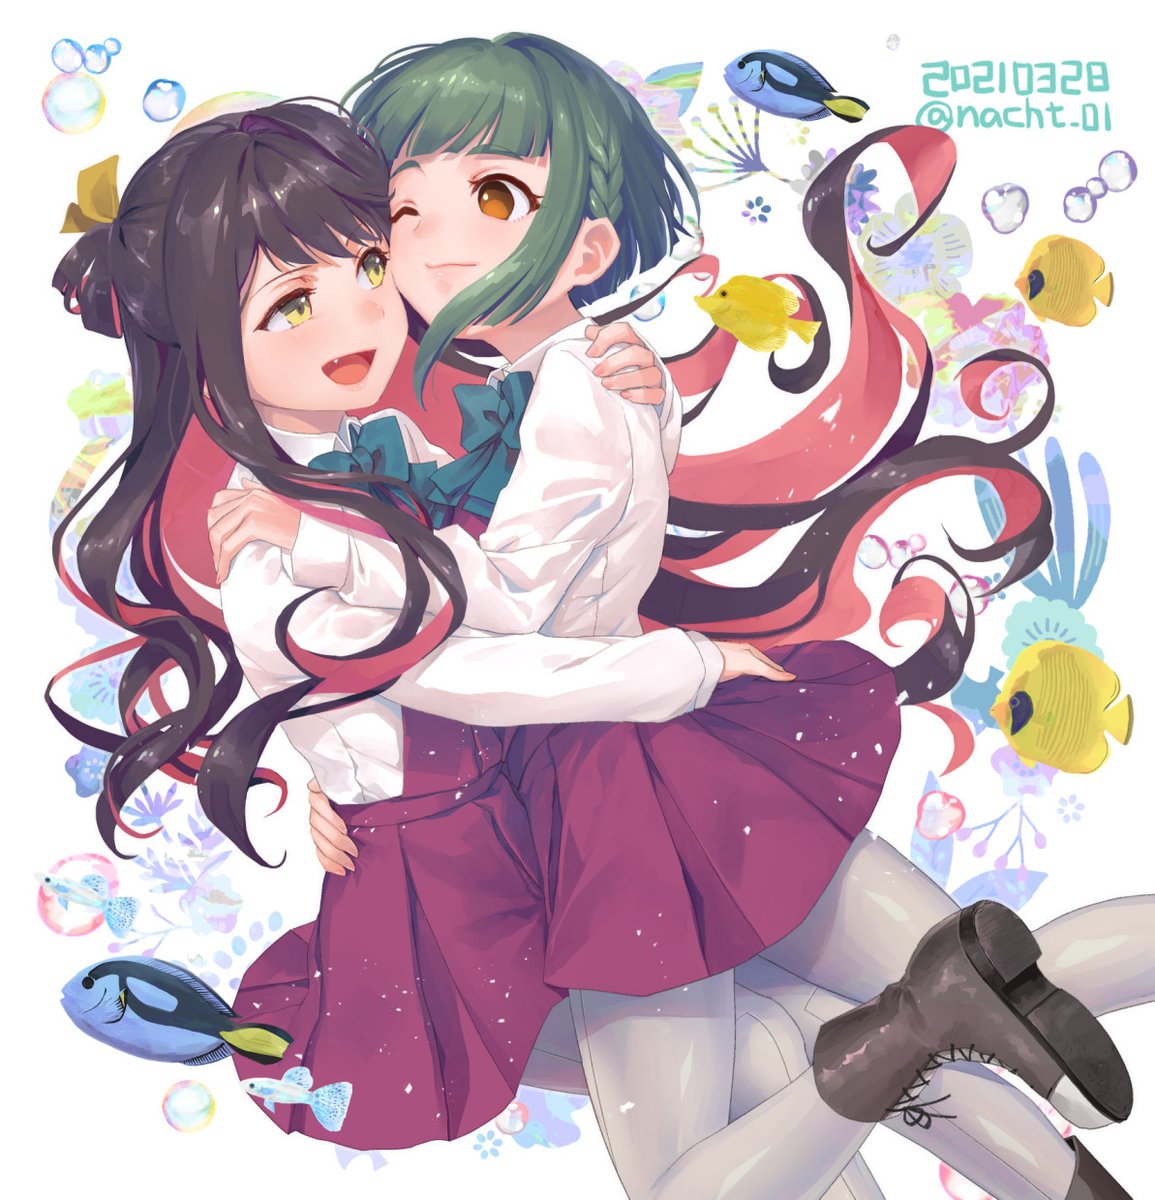 naganami (kancolle) ,takanami (kancolle) multiple girls 2girls green hair pink hair long hair one eye closed black hair  illustration images